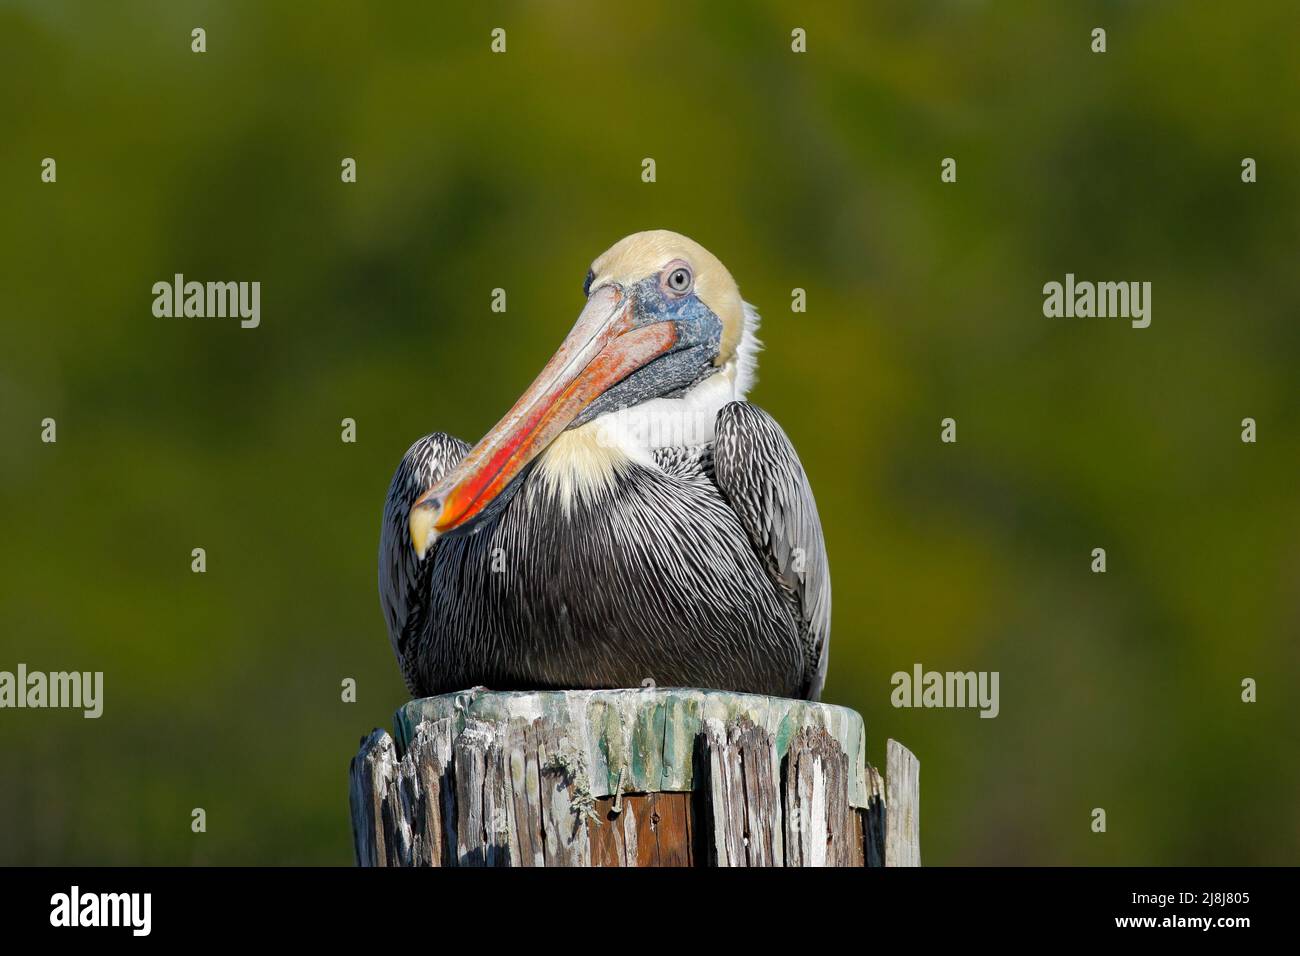 Pelican marrone, Pelecanus occidentalis, Florida, USA. Uccello che siede sul moncone dell'albero sopra l'acqua. Uccelli marini nell'habitat naturale. Birdwatching in F Foto Stock